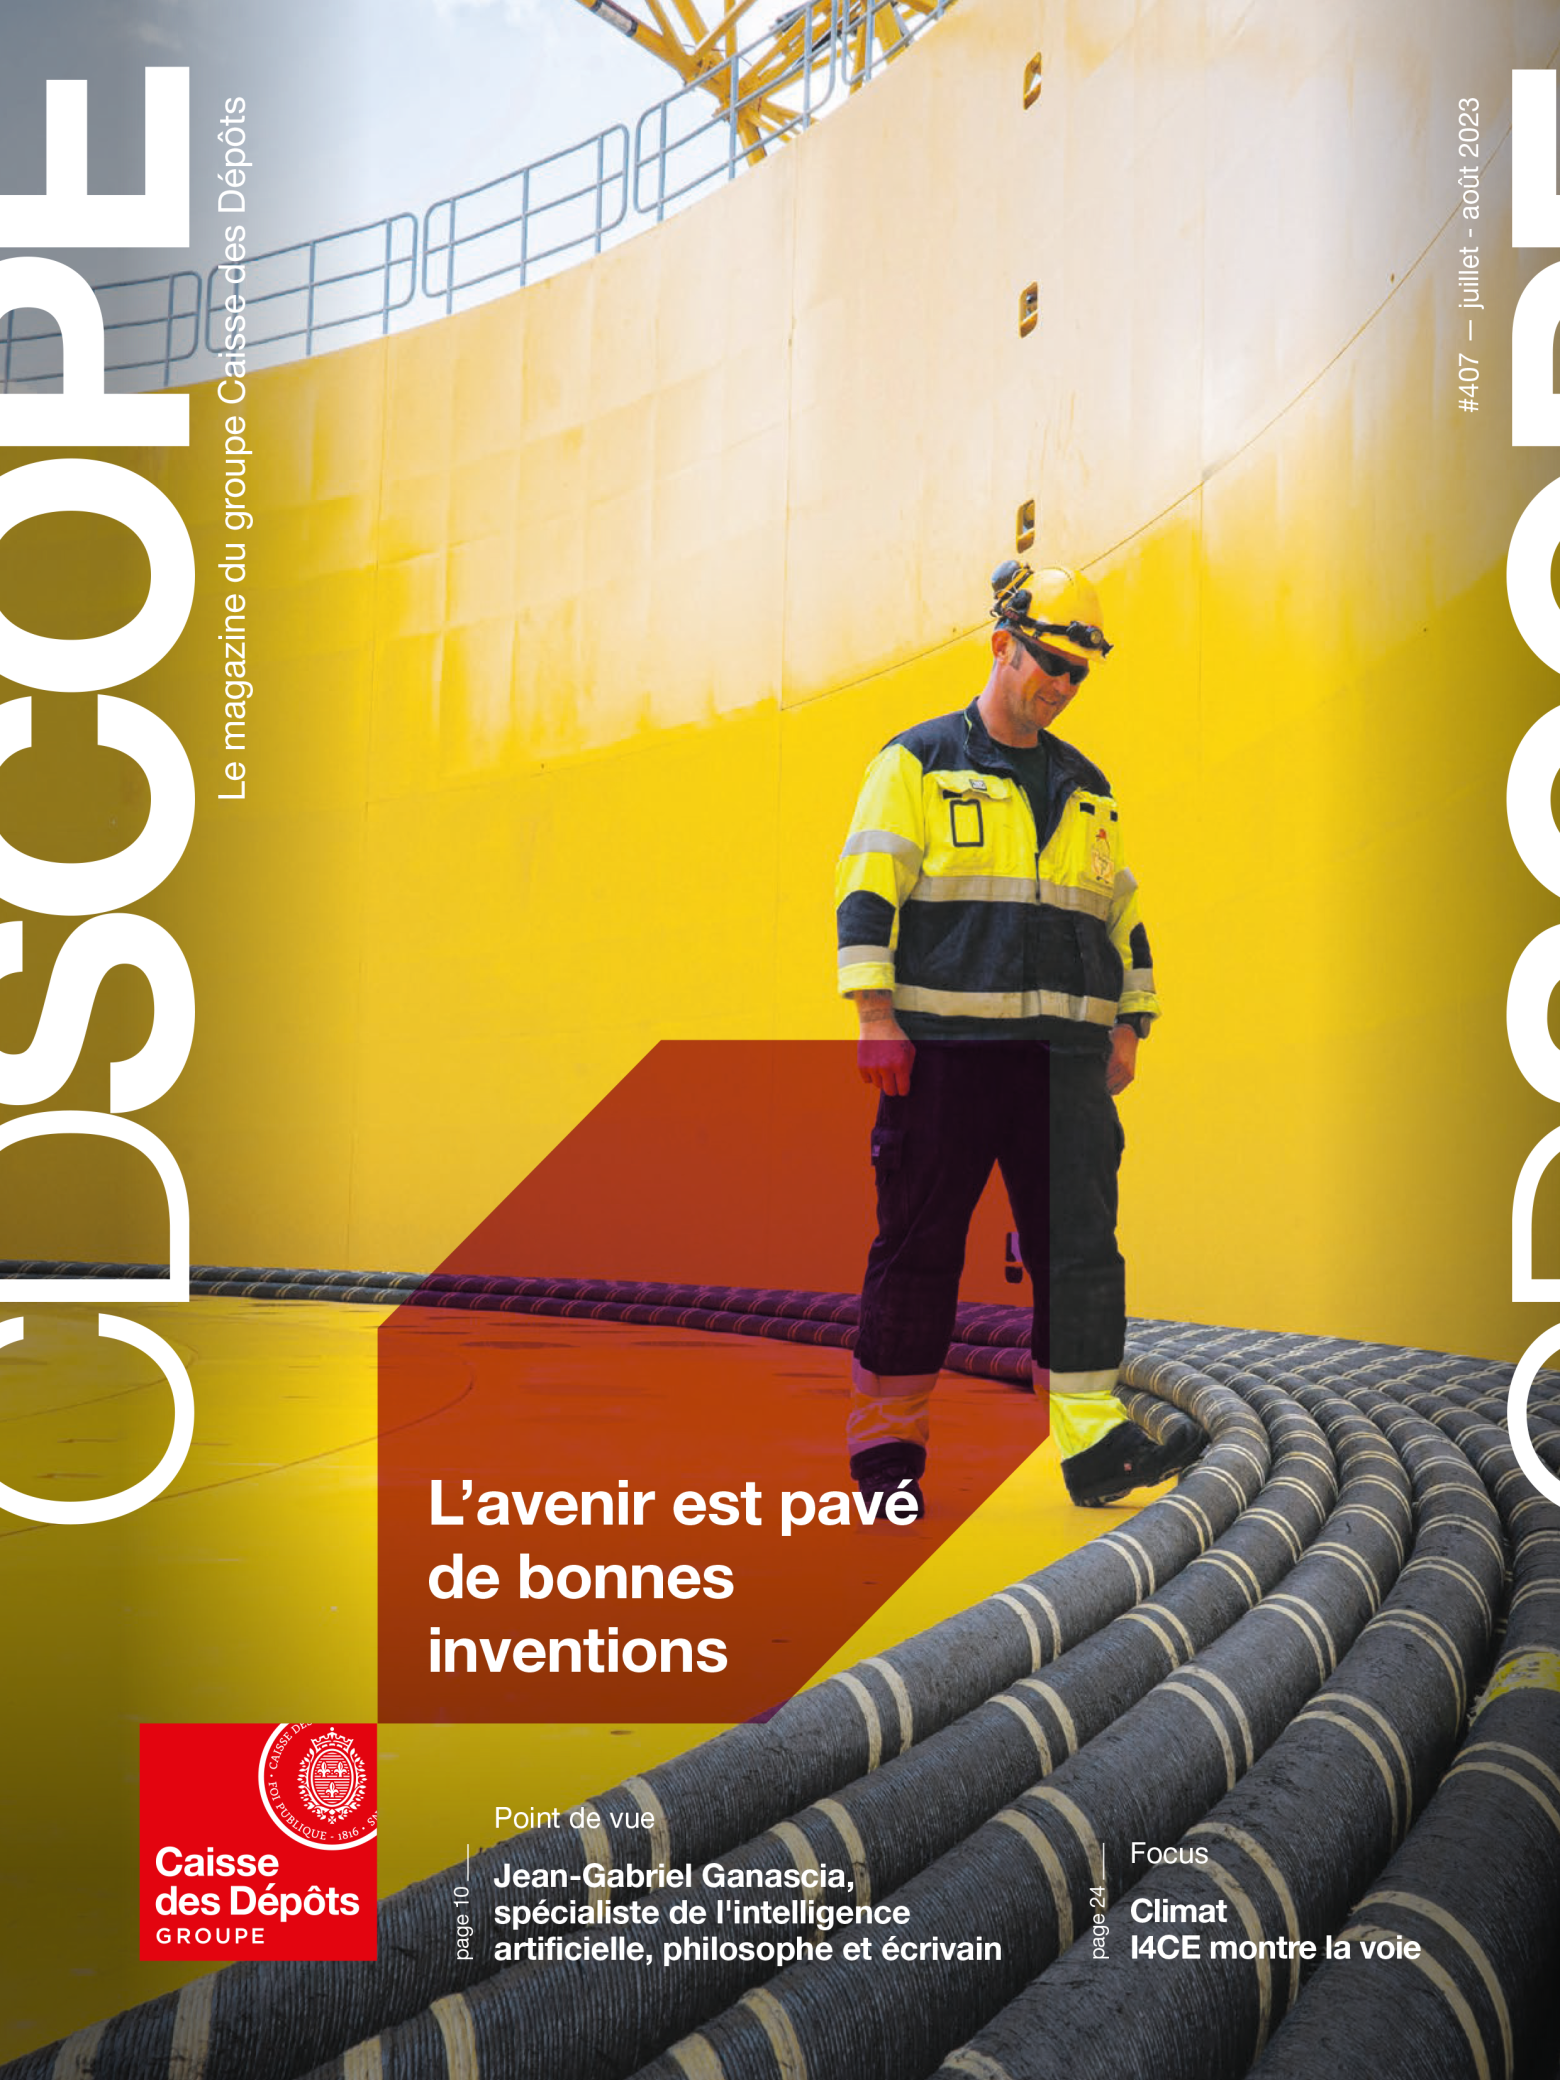 Couverture du magazine CDscope n°407. Un homme en vêtements de travail avance sur un chantier.